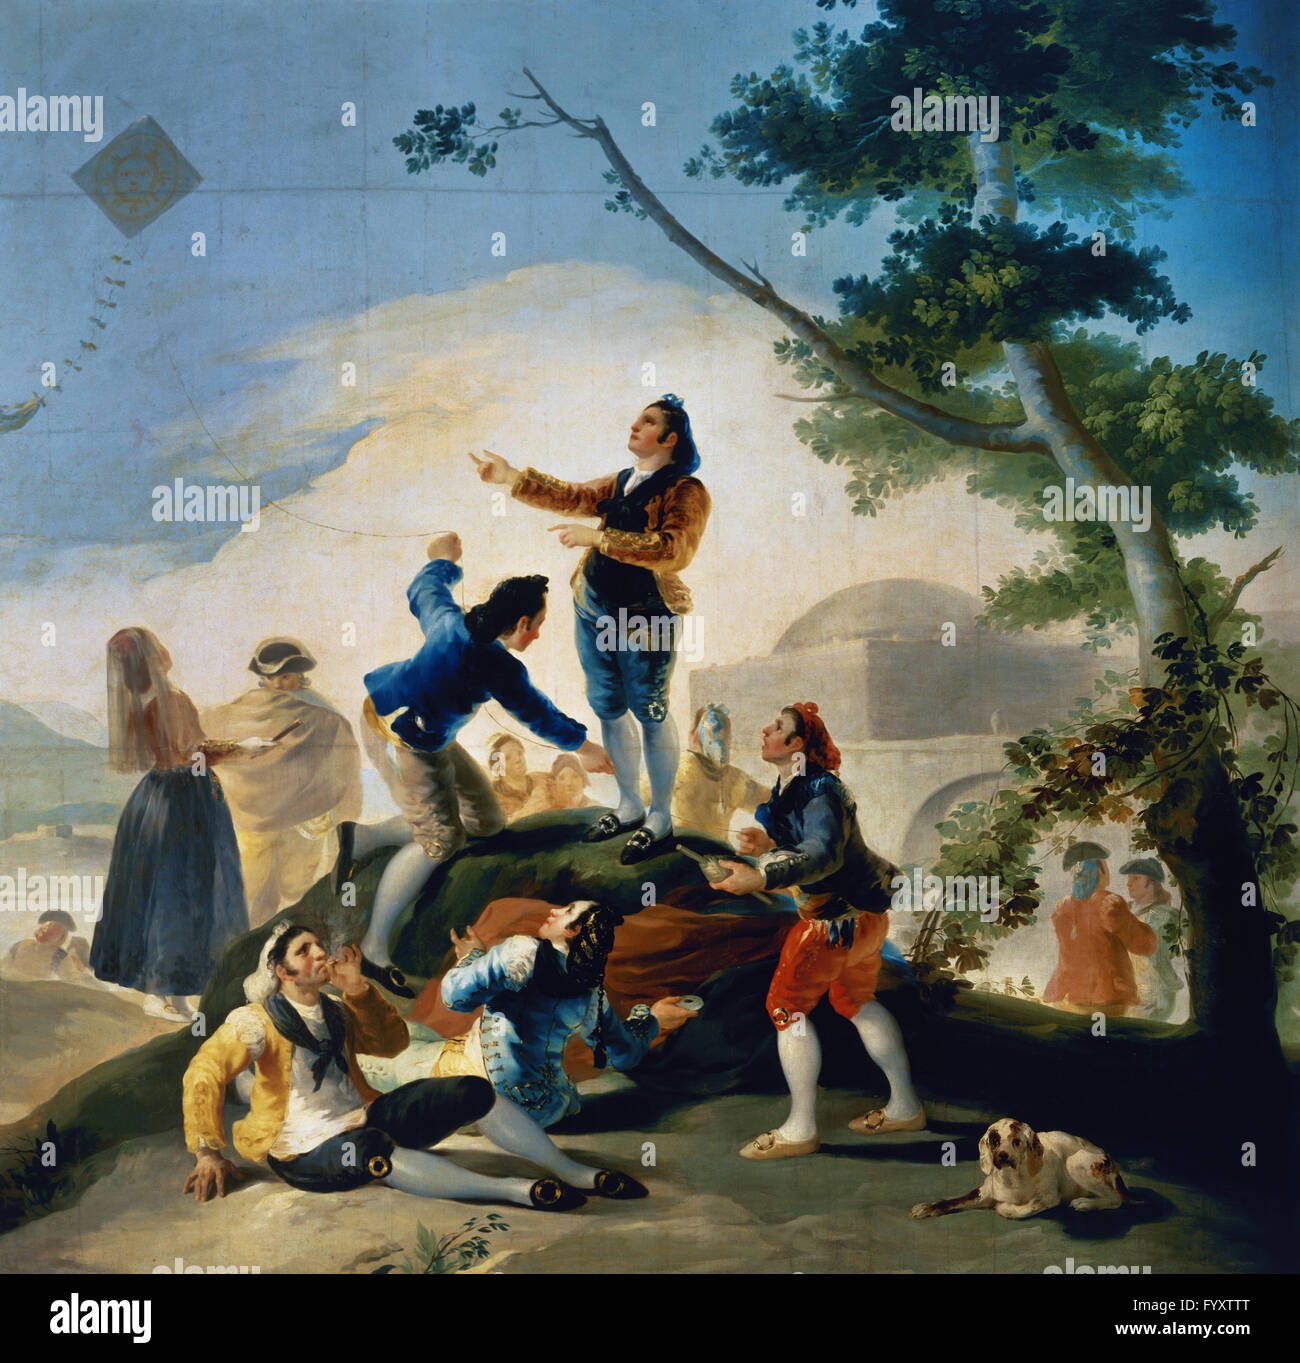 Francisco de Goya y Lucientes (1746-1828). Spanischer Maler. Der Kite, 1777-1778. Prado-Museum. Madrid. Spanien. Stockfoto